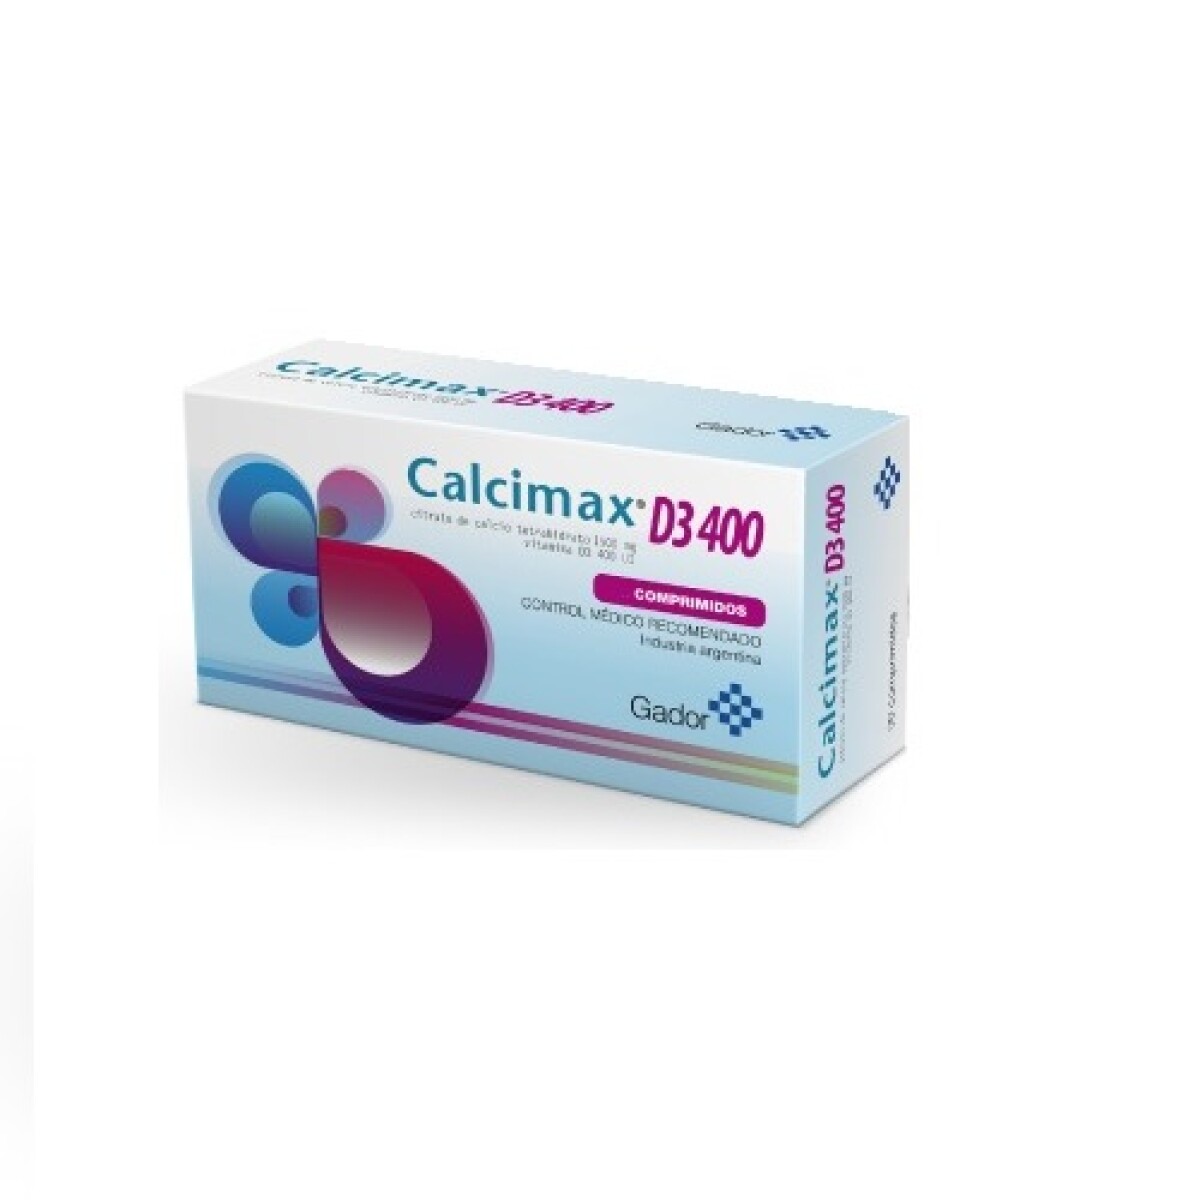 Calcimax D3 400. 60 Comp. 